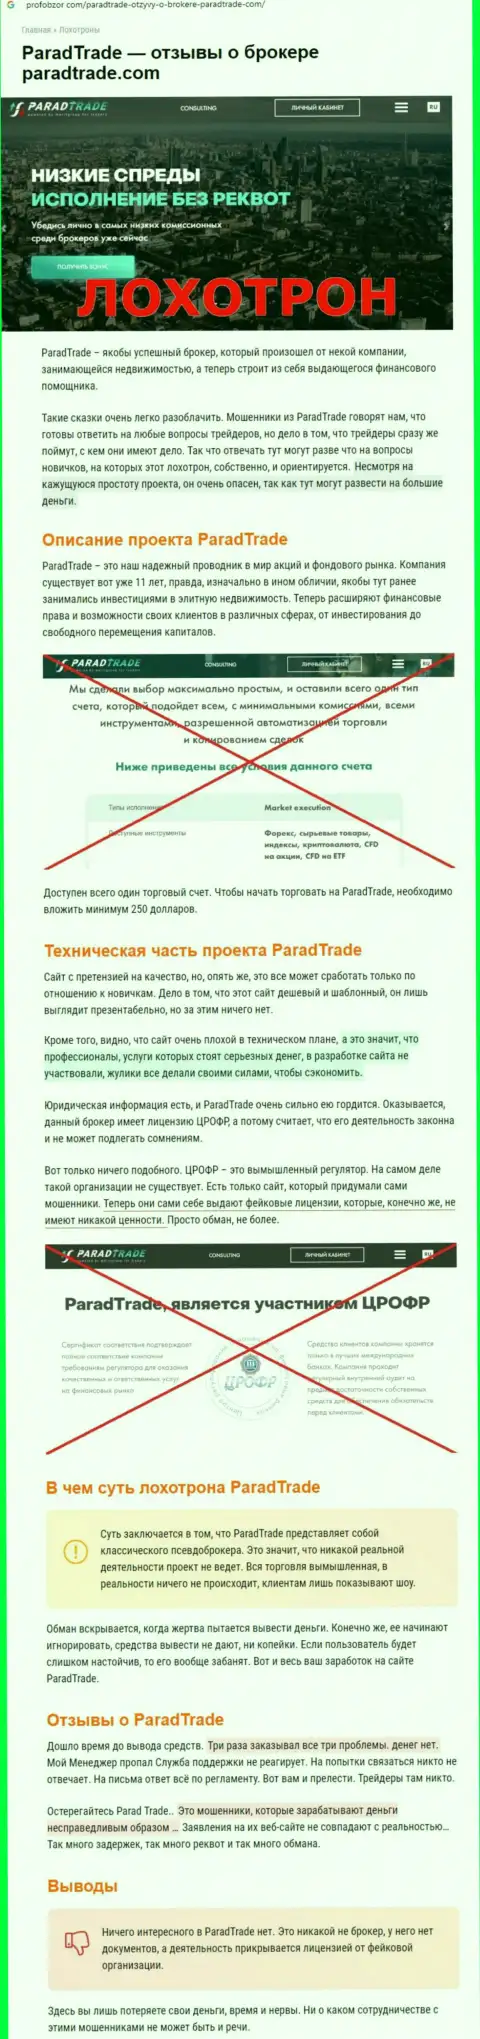 Parad Trade - это МОШЕННИК !!! Отзывы и подтверждения незаконных деяний в обзорной статье